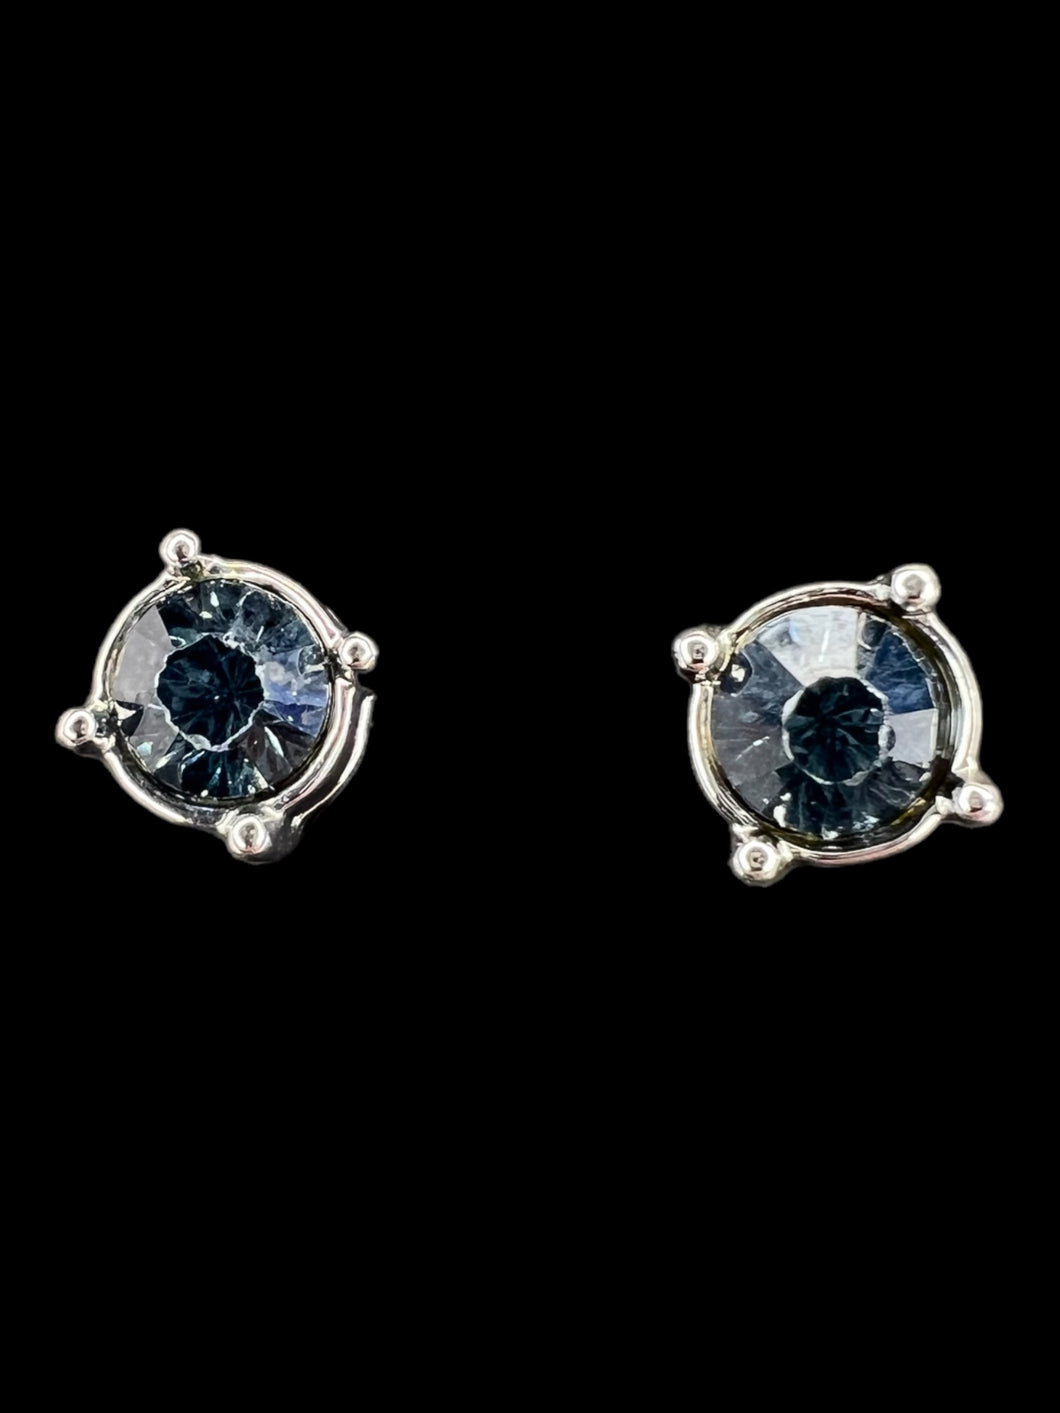 Silver-like framed blue stone stud earrings